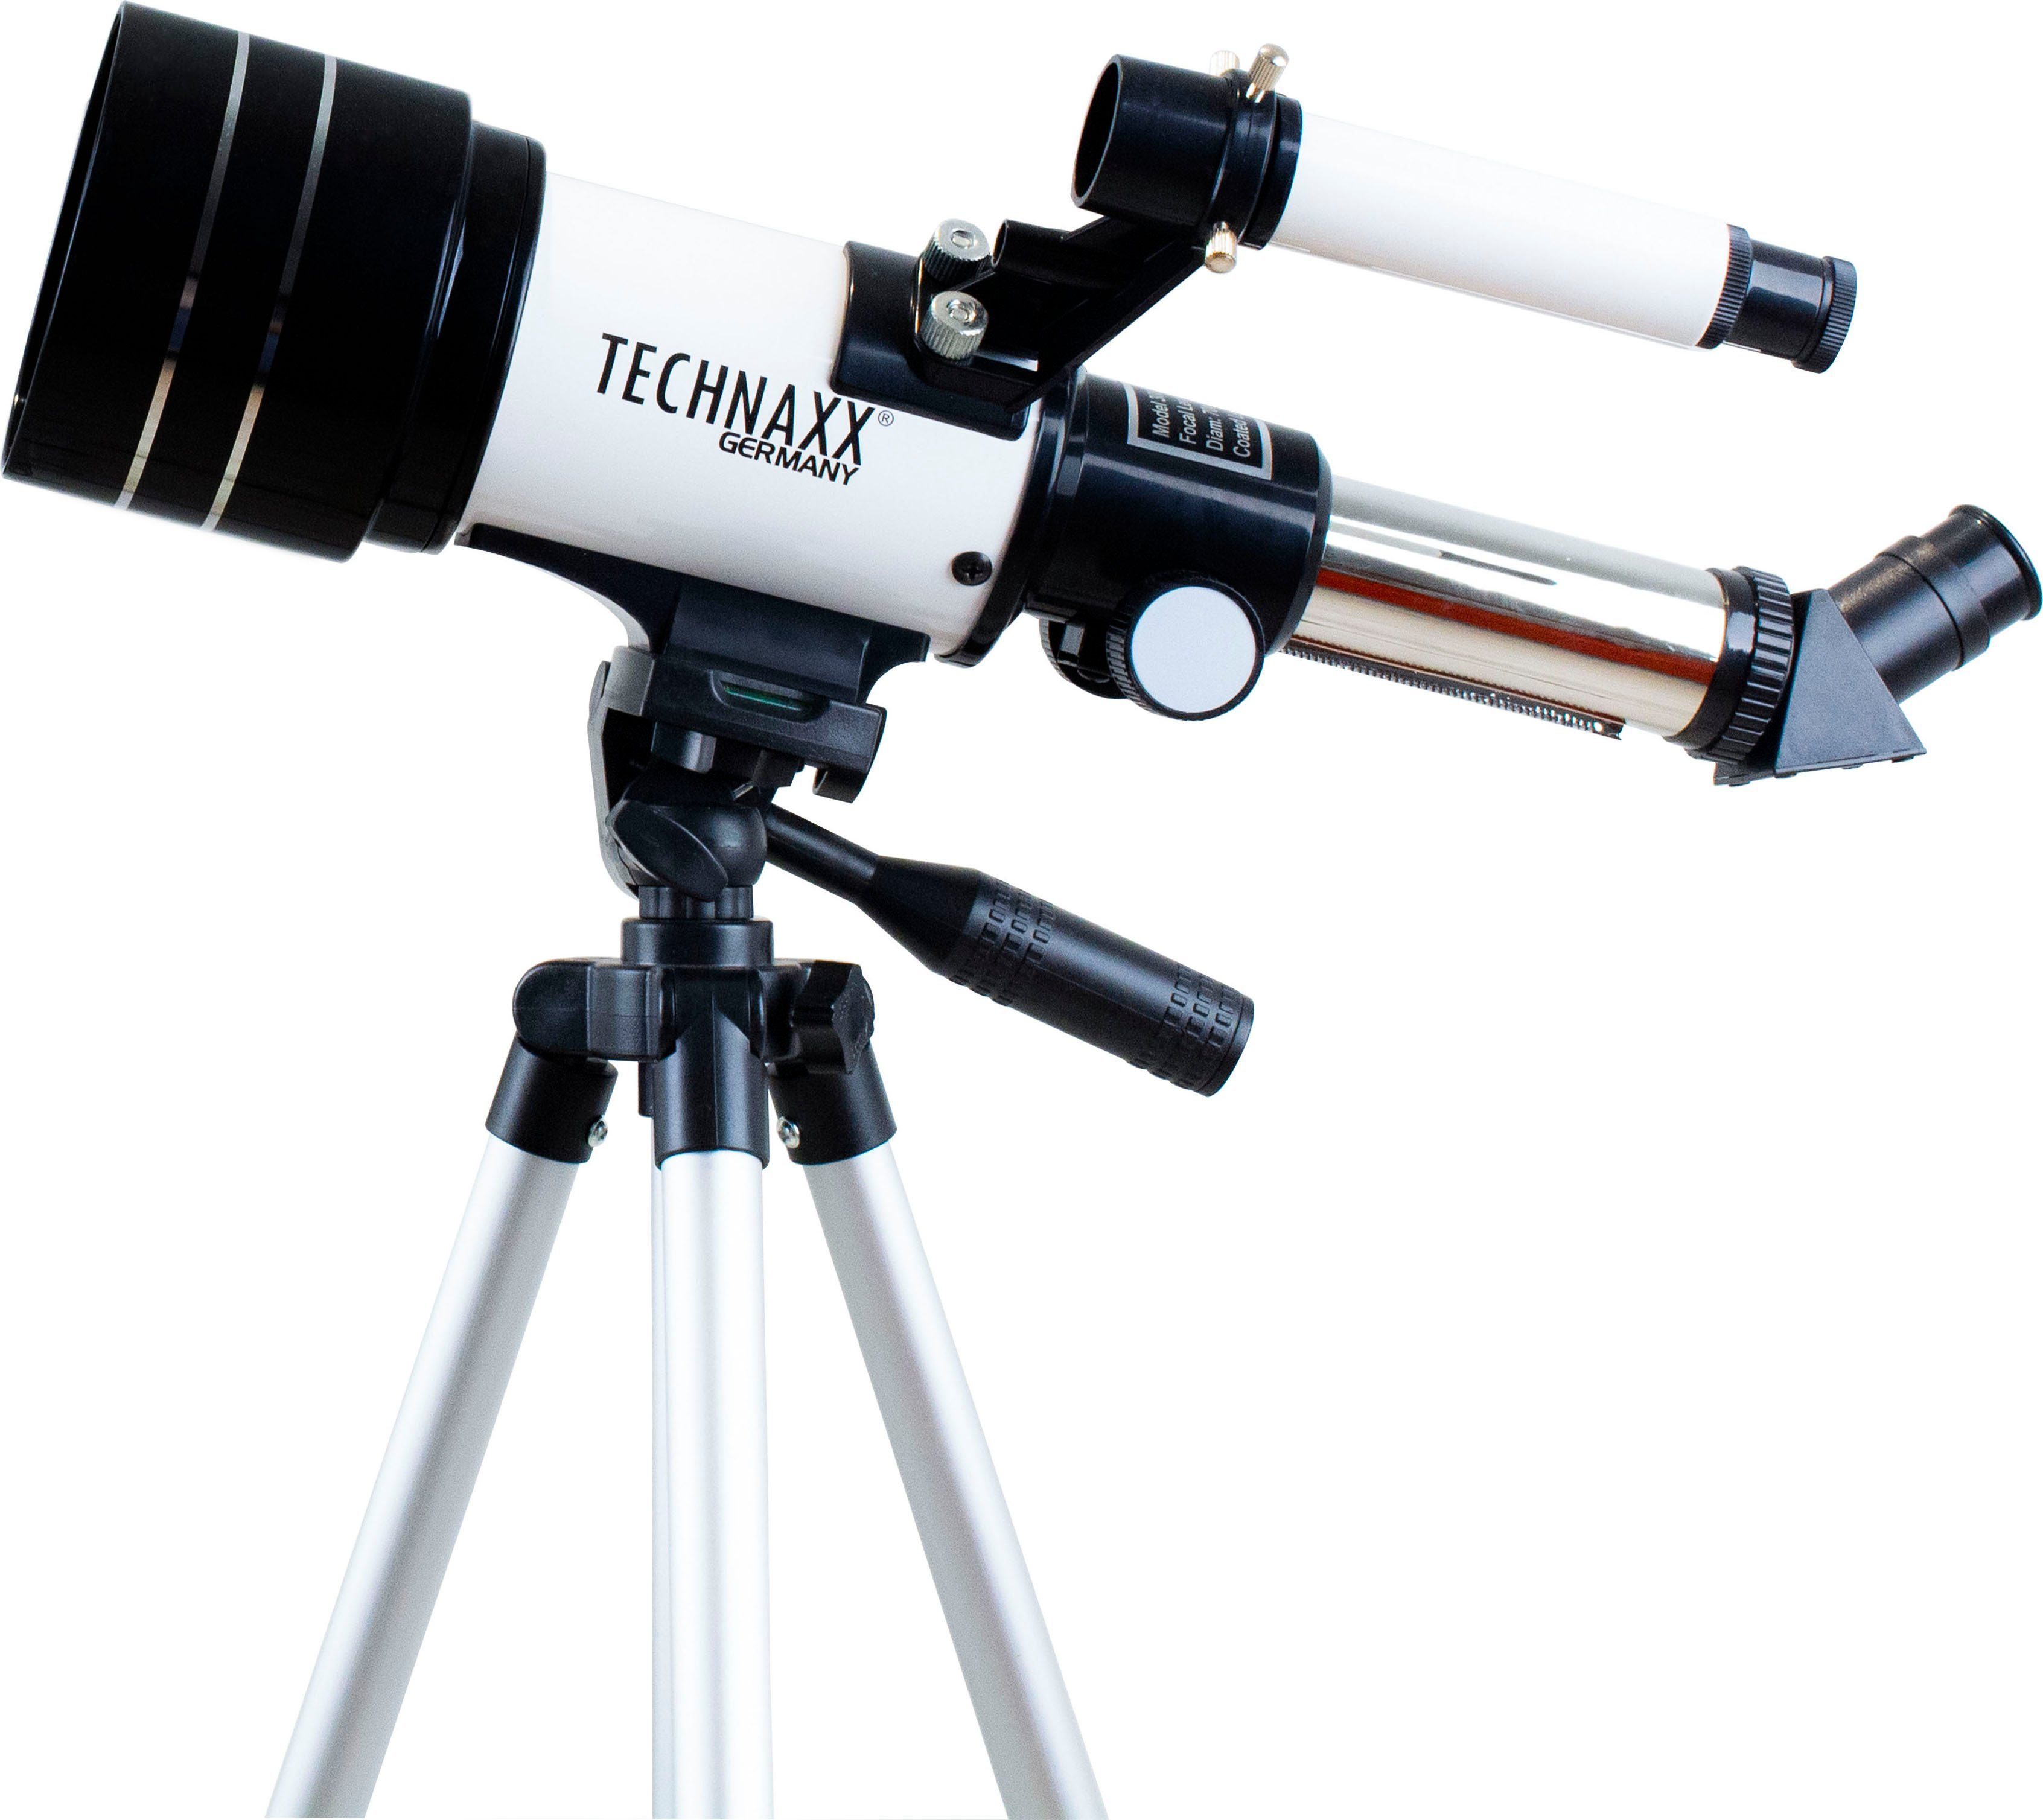 Teleskop Barlowlinse Vergrößerung, Technaxx Die Sternenfotographie 70/300 die ideal für TX-175, verdreifacht die